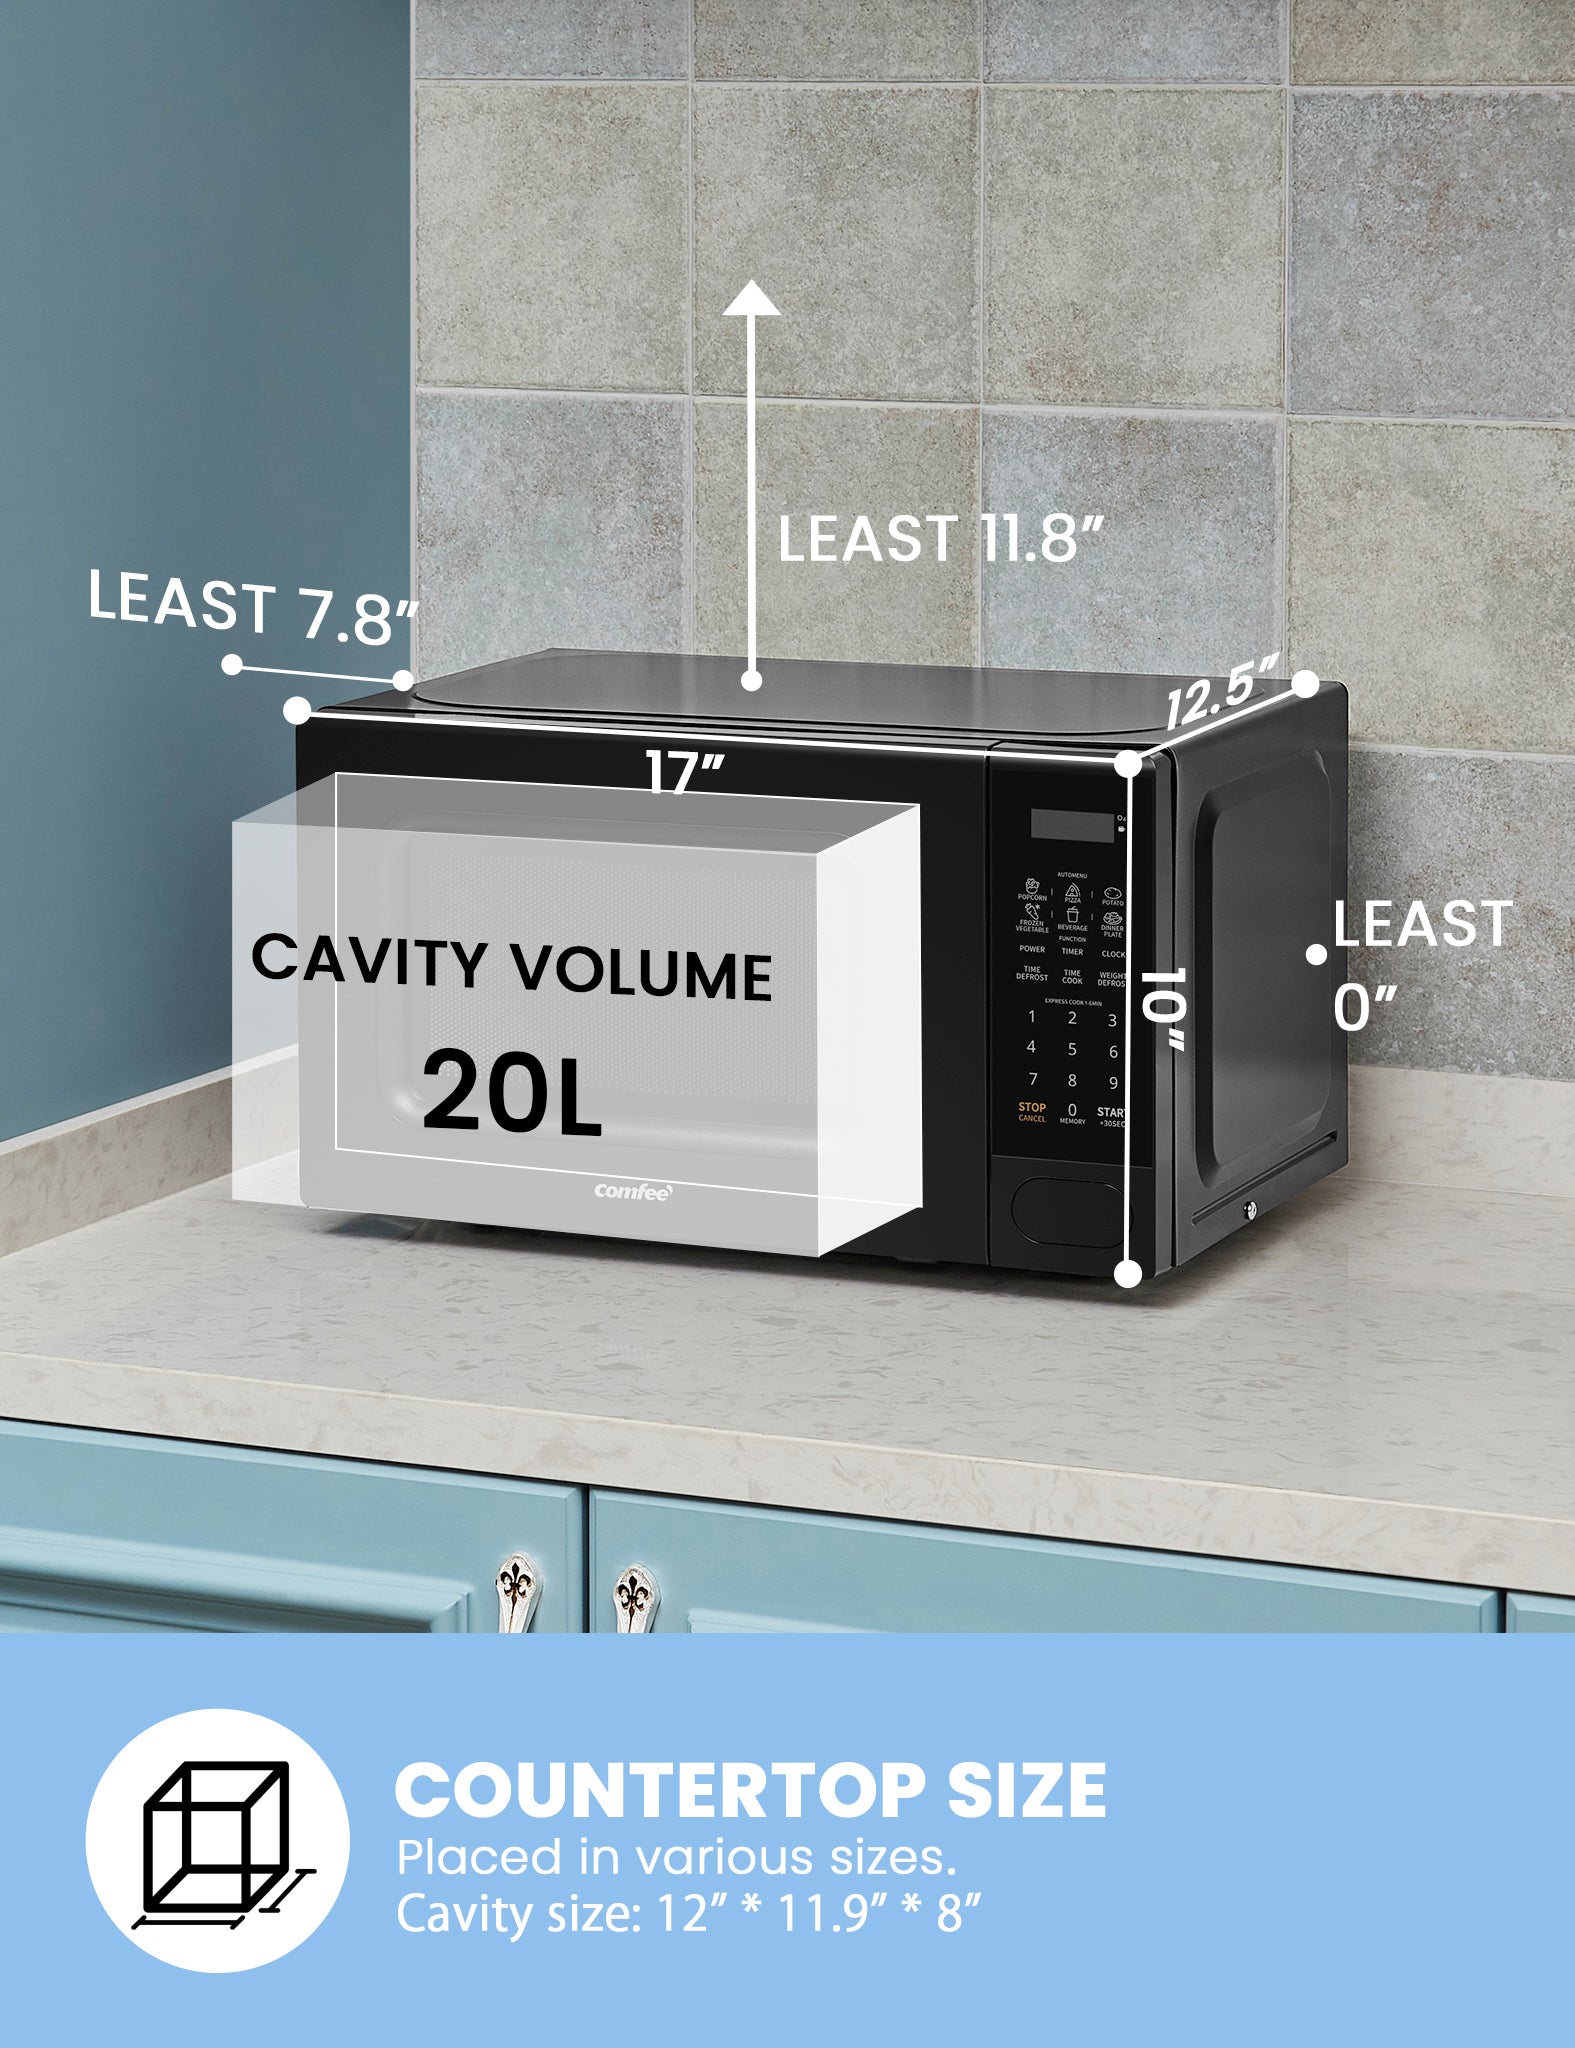 Comfee Retro 0.7-cu ft 700-Watt Countertop Microwave (Apricot) in